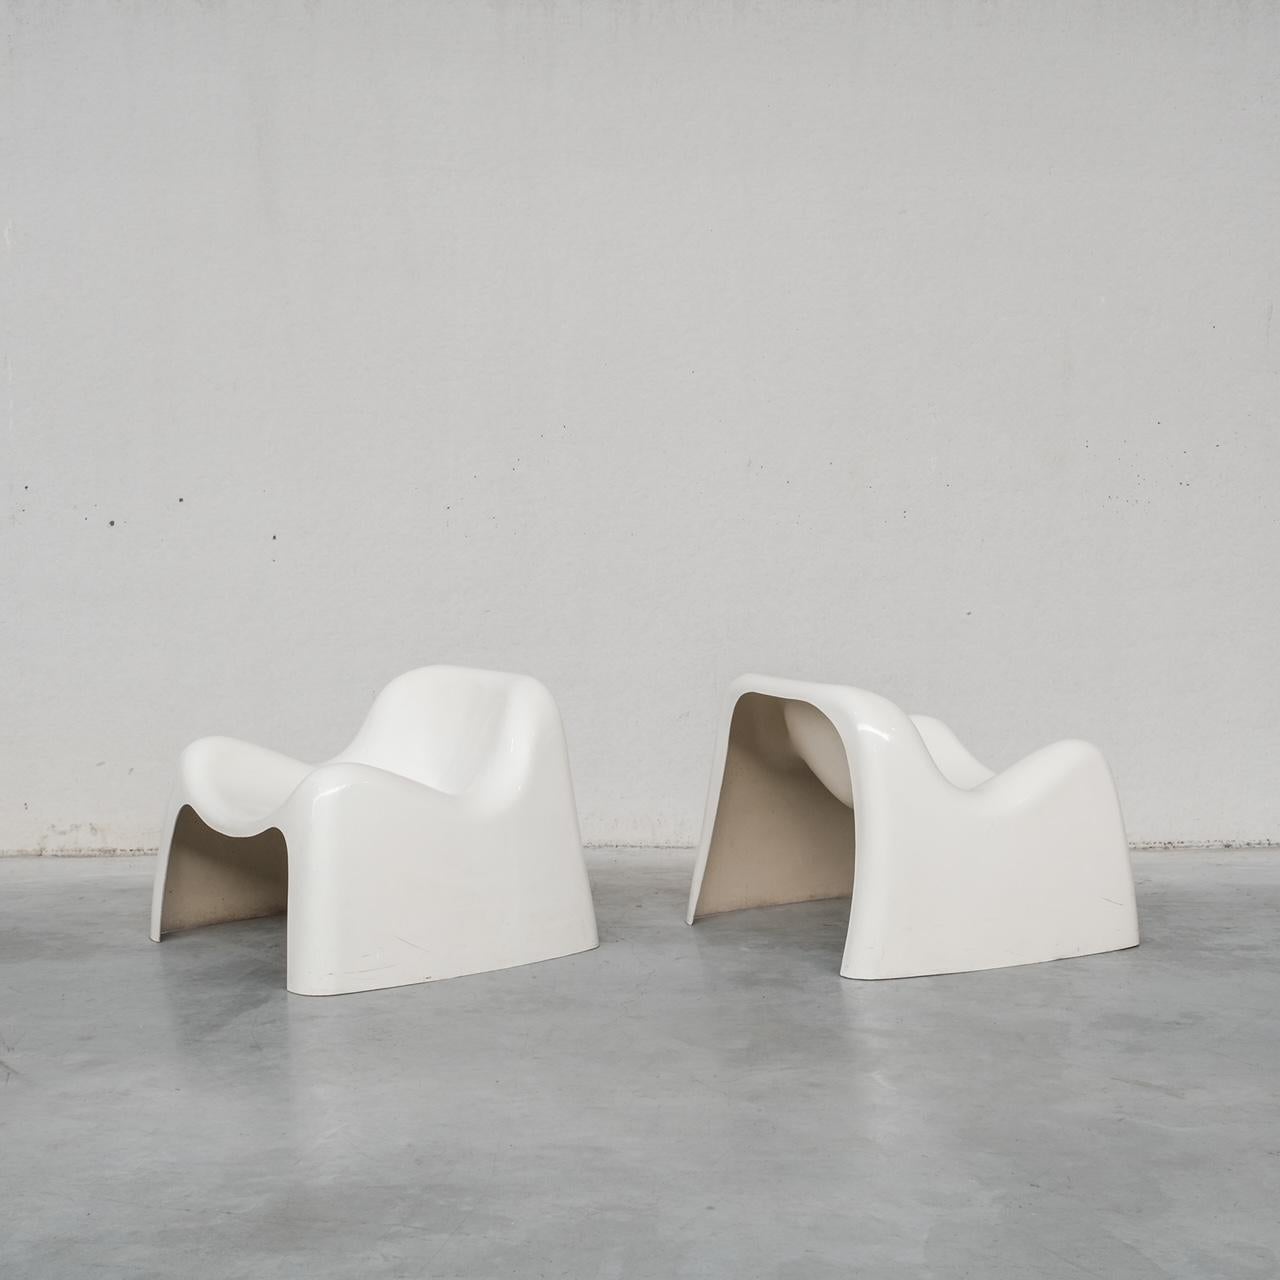 Une paire de fauteuils, modèle 'Toga' du designer Sergio Mazza. 

Italie, c1968. 

Un modèle est aujourd'hui présent au Victoria & Albert Museum de Londres, témoignant de son design intemporel. 

Moulées en fibre de verre, les chaises sont